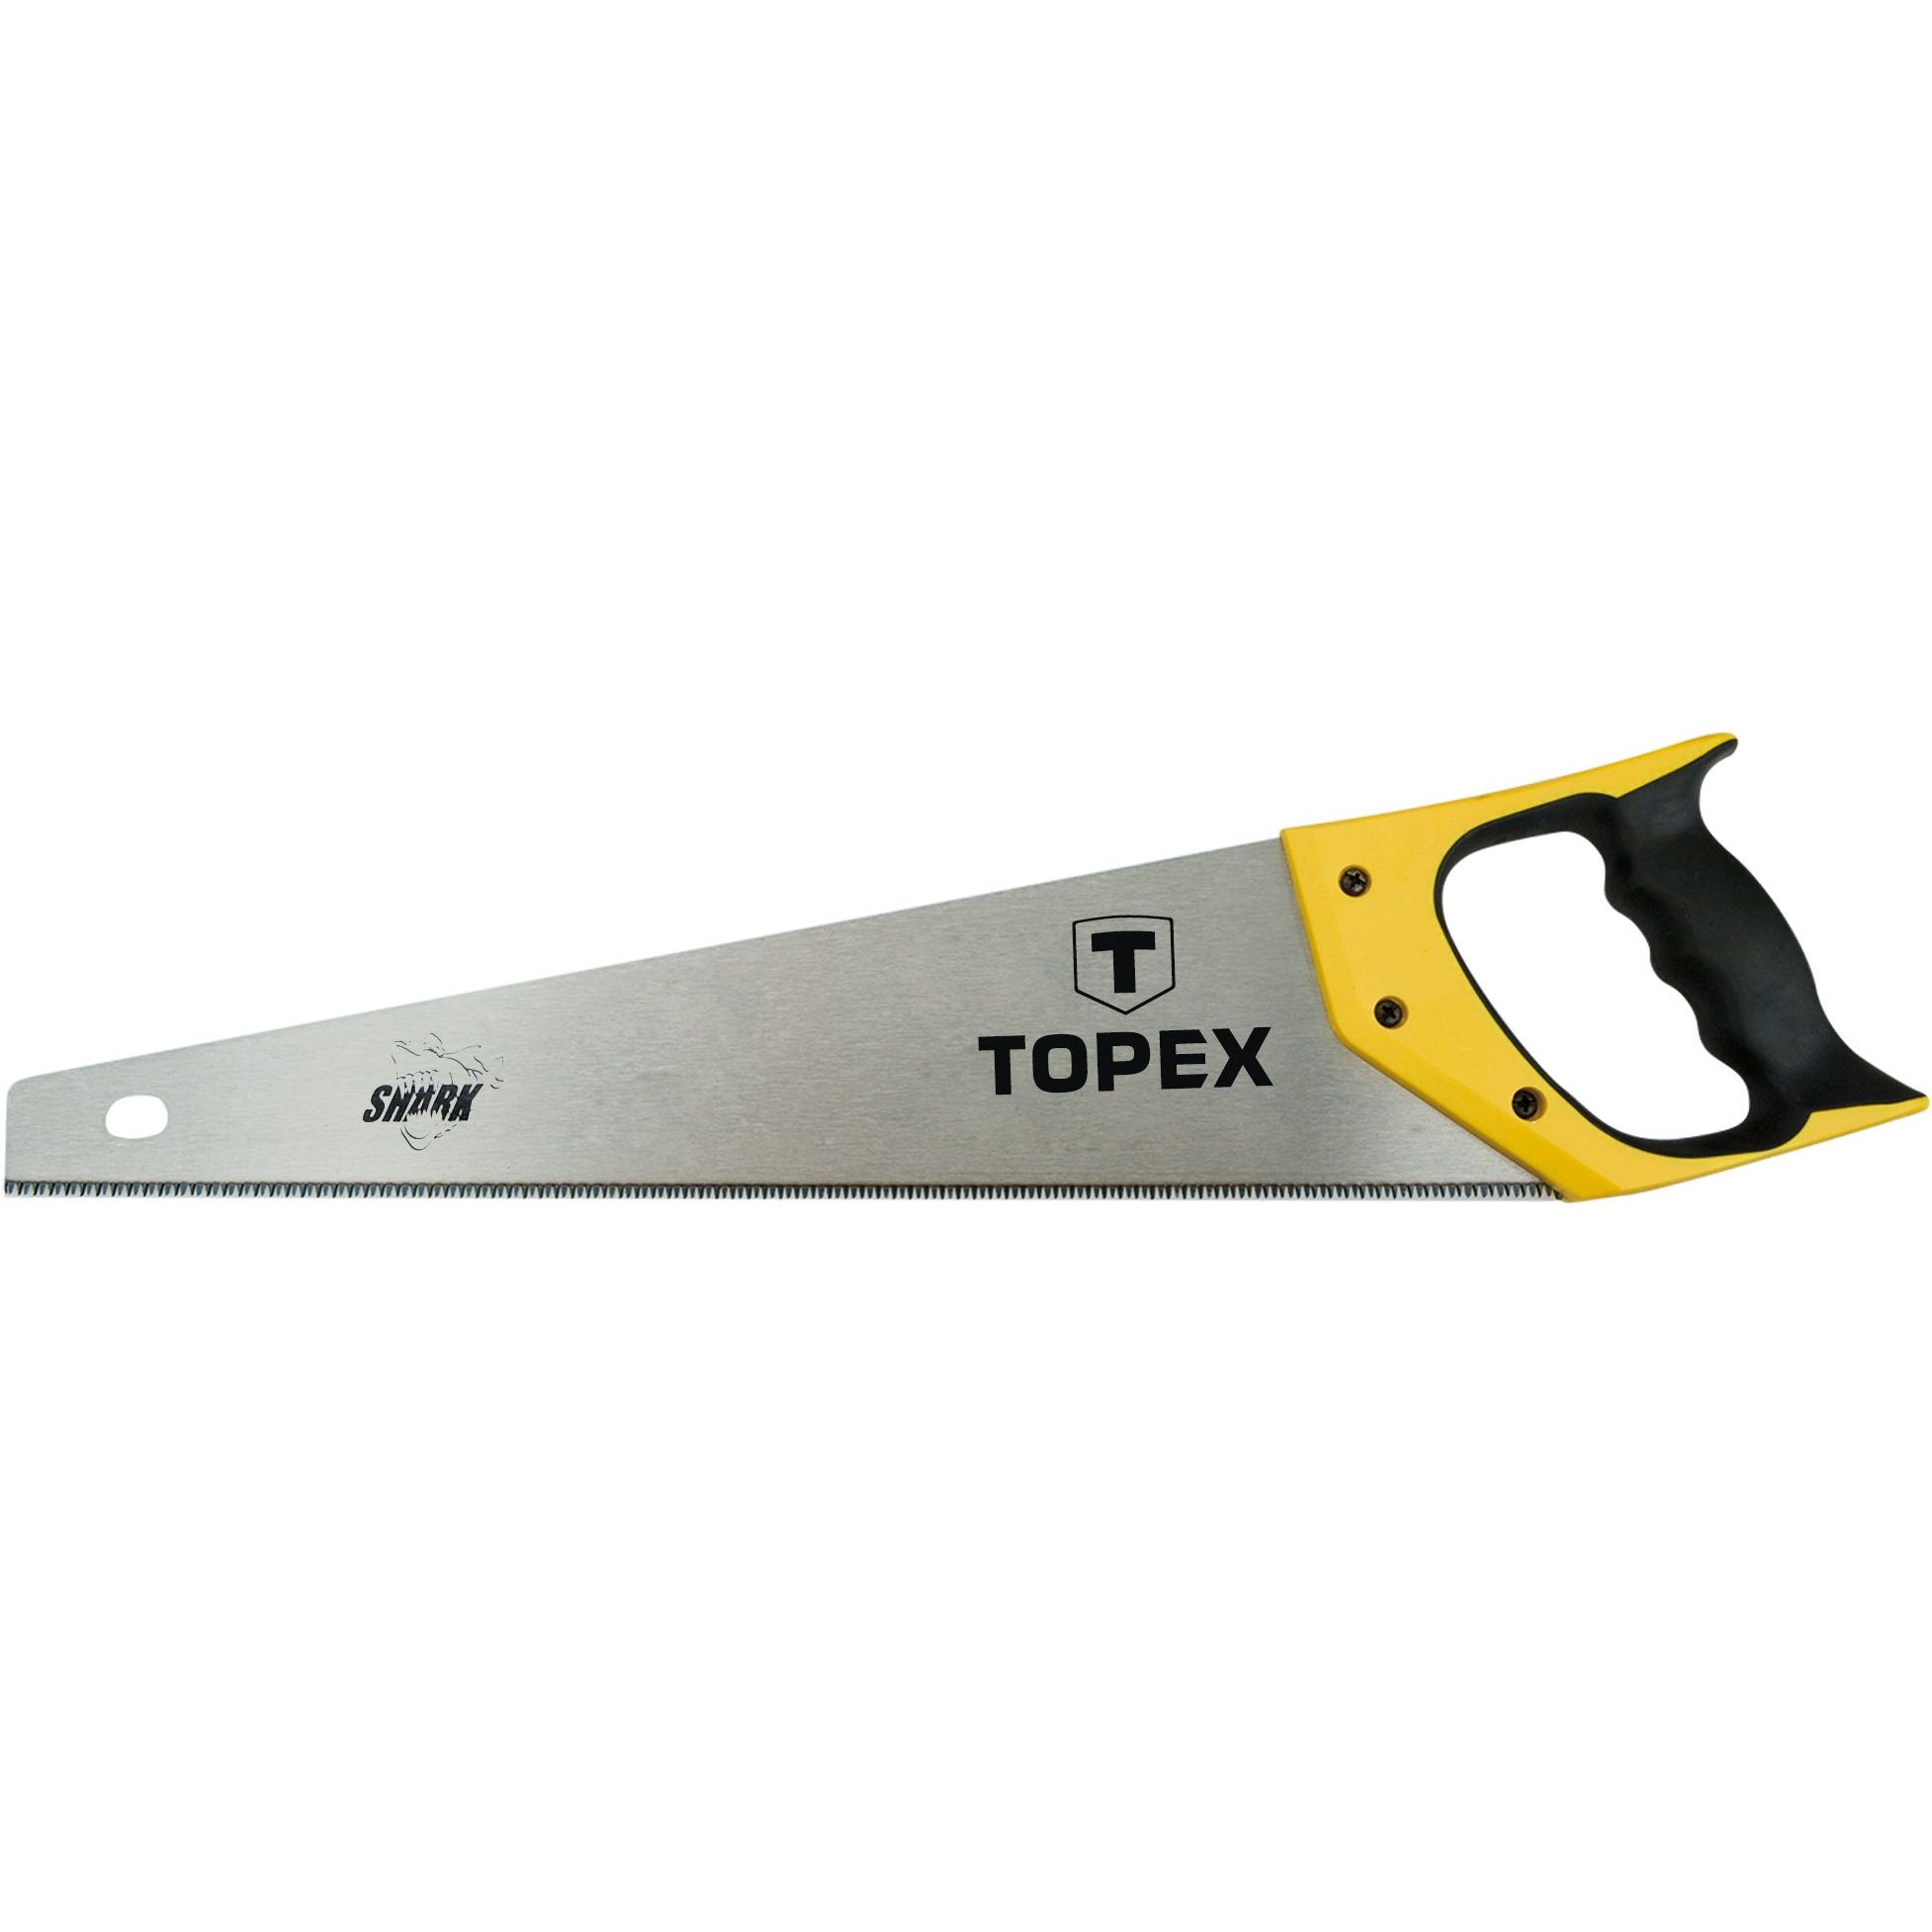 Ножівка по дереву Topex Shark 11TPI 450 мм (10A447) - фото 1